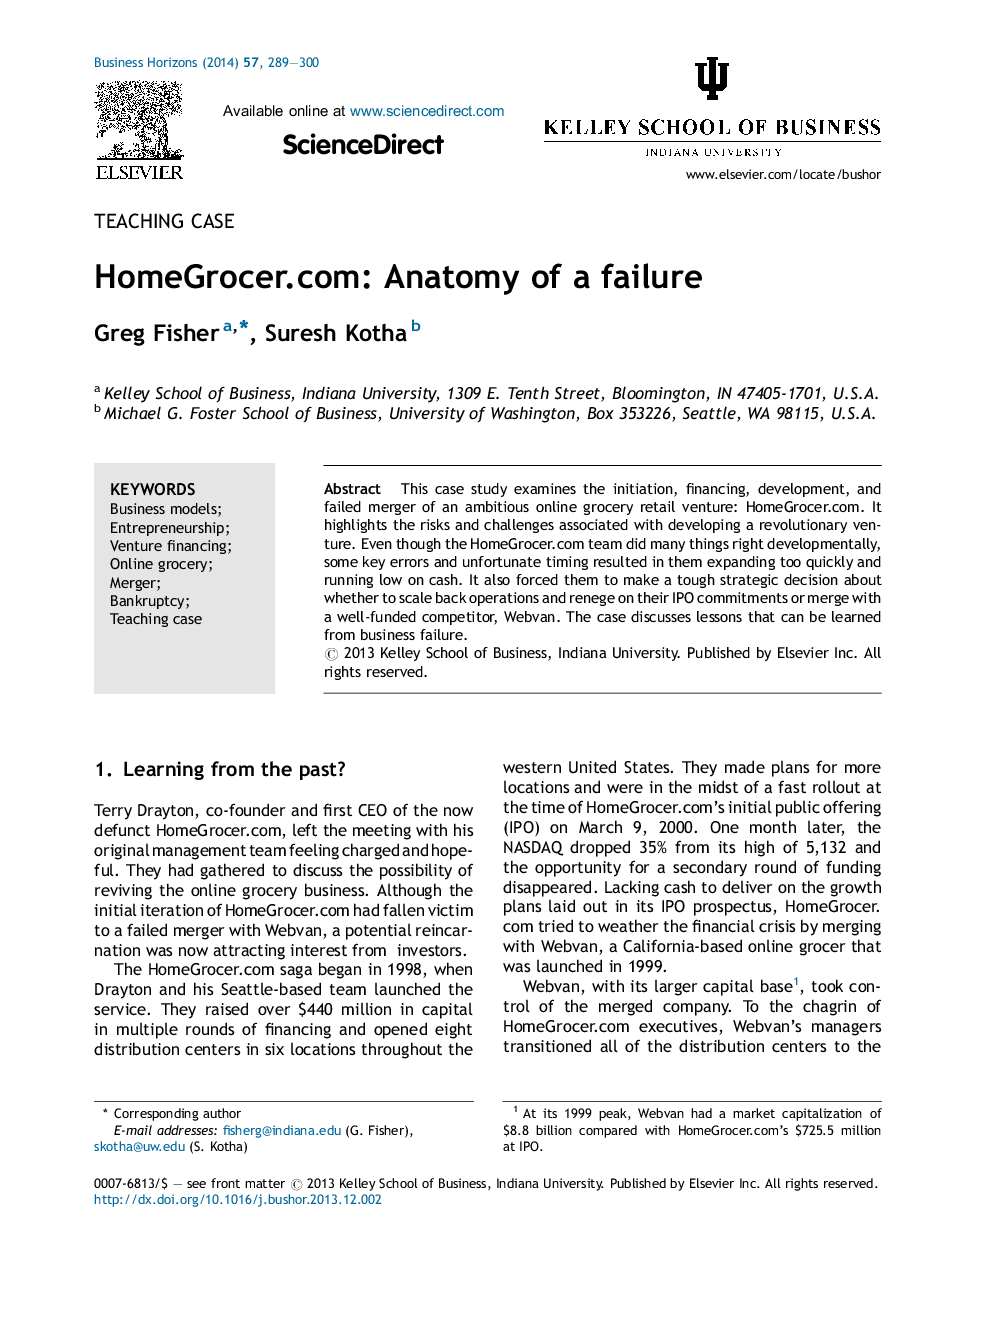 HomeGrocer.com: Anatomy of a failure